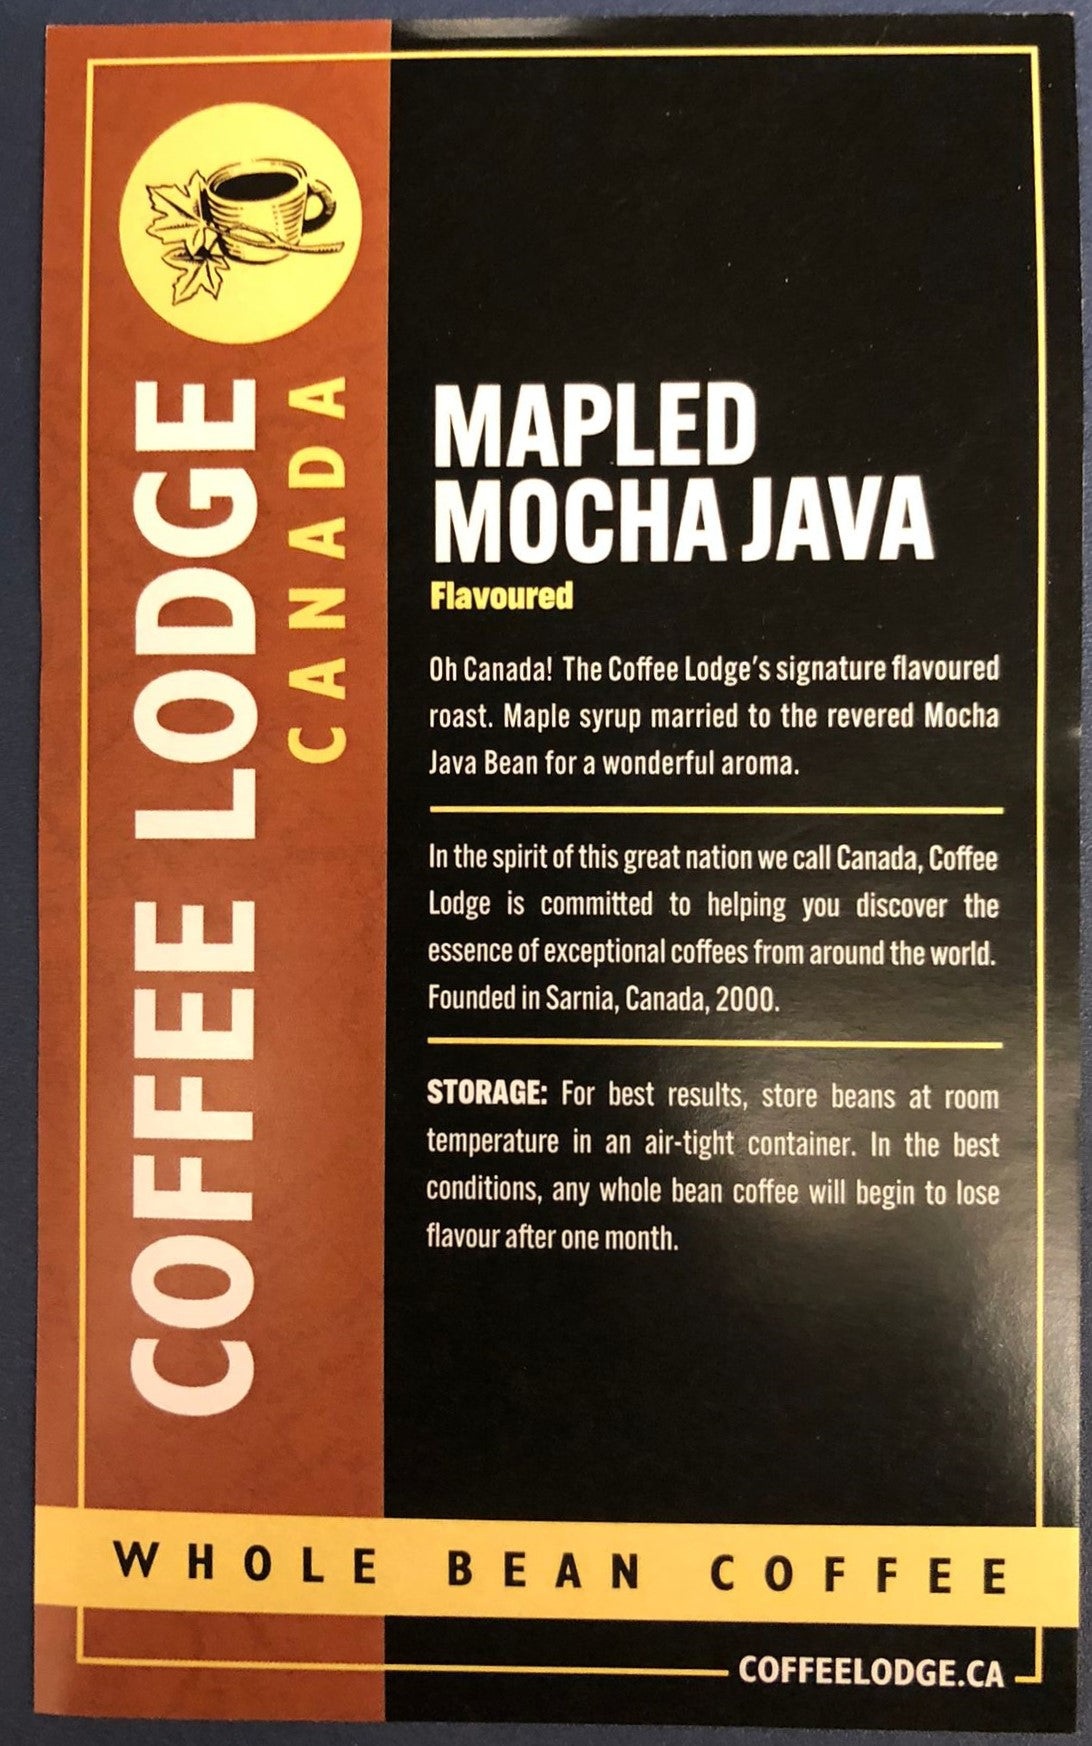 Mapled Mocha Java